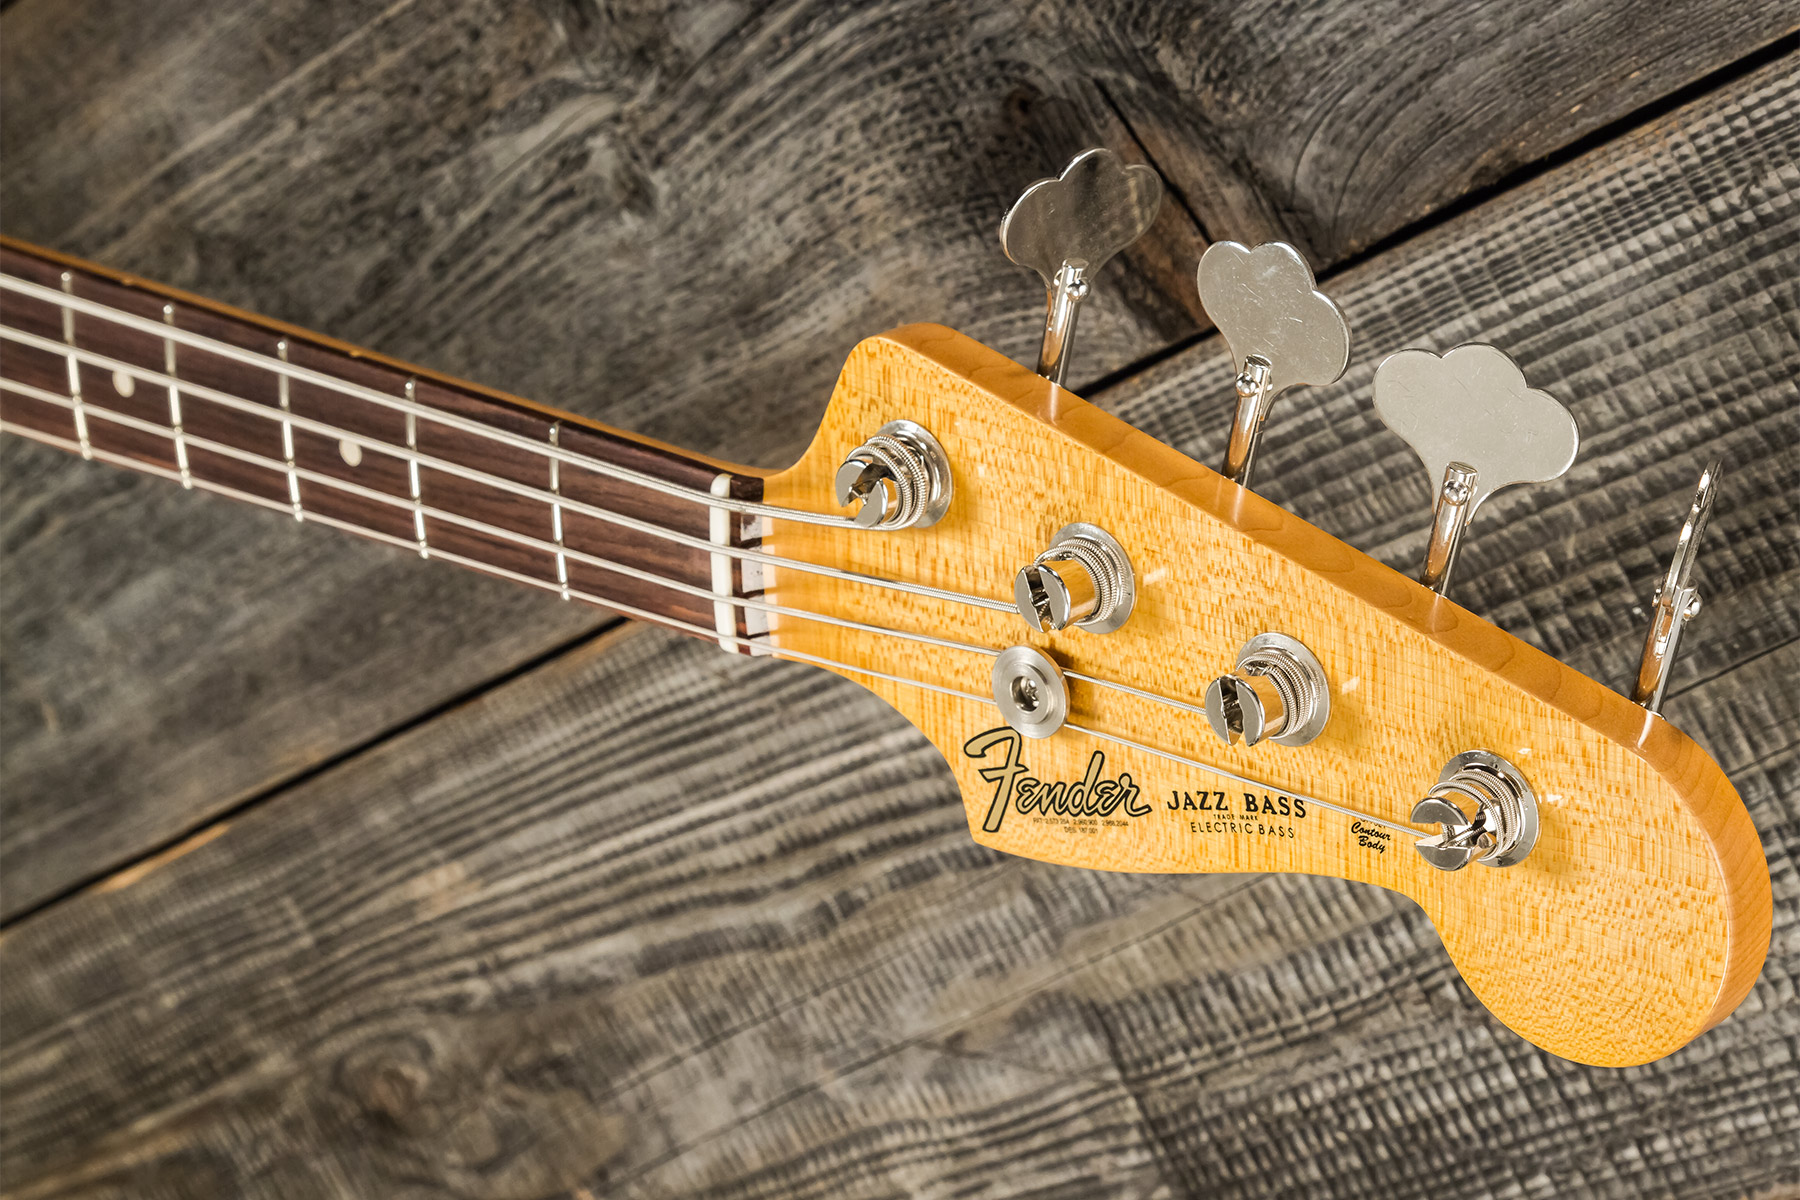 Fender Custom Shop Jazz Bass 1964 Rw #r126513 - Closet Classic 2-color Sunburst - Solidbody E-bass - Variation 7